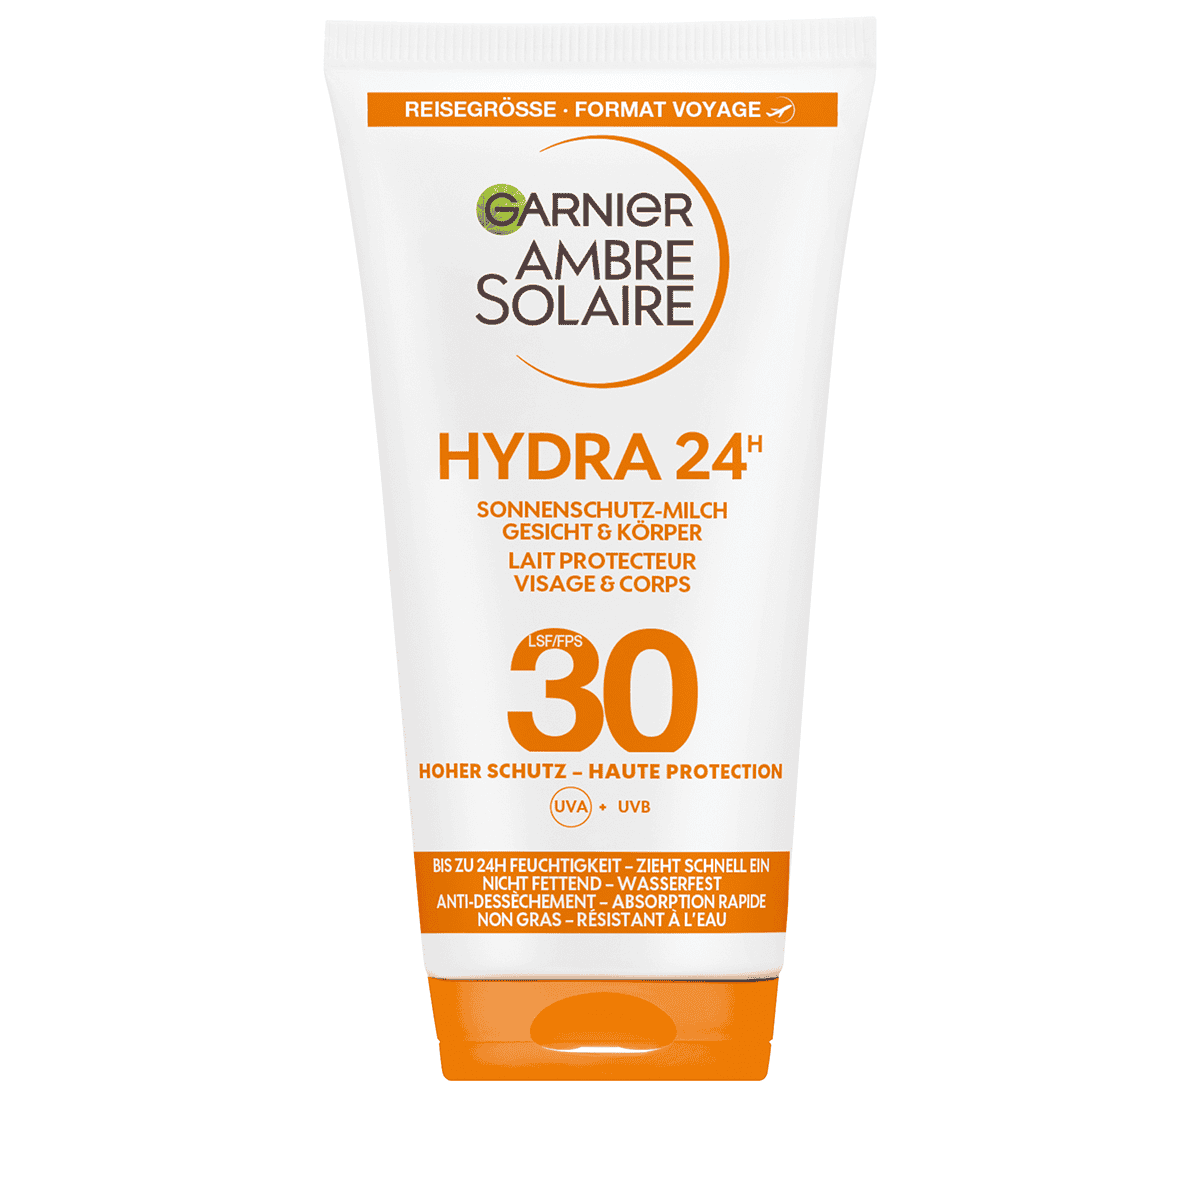 Hydra Garnier Sonnenschutz-Milch 24h • 30 LSF •